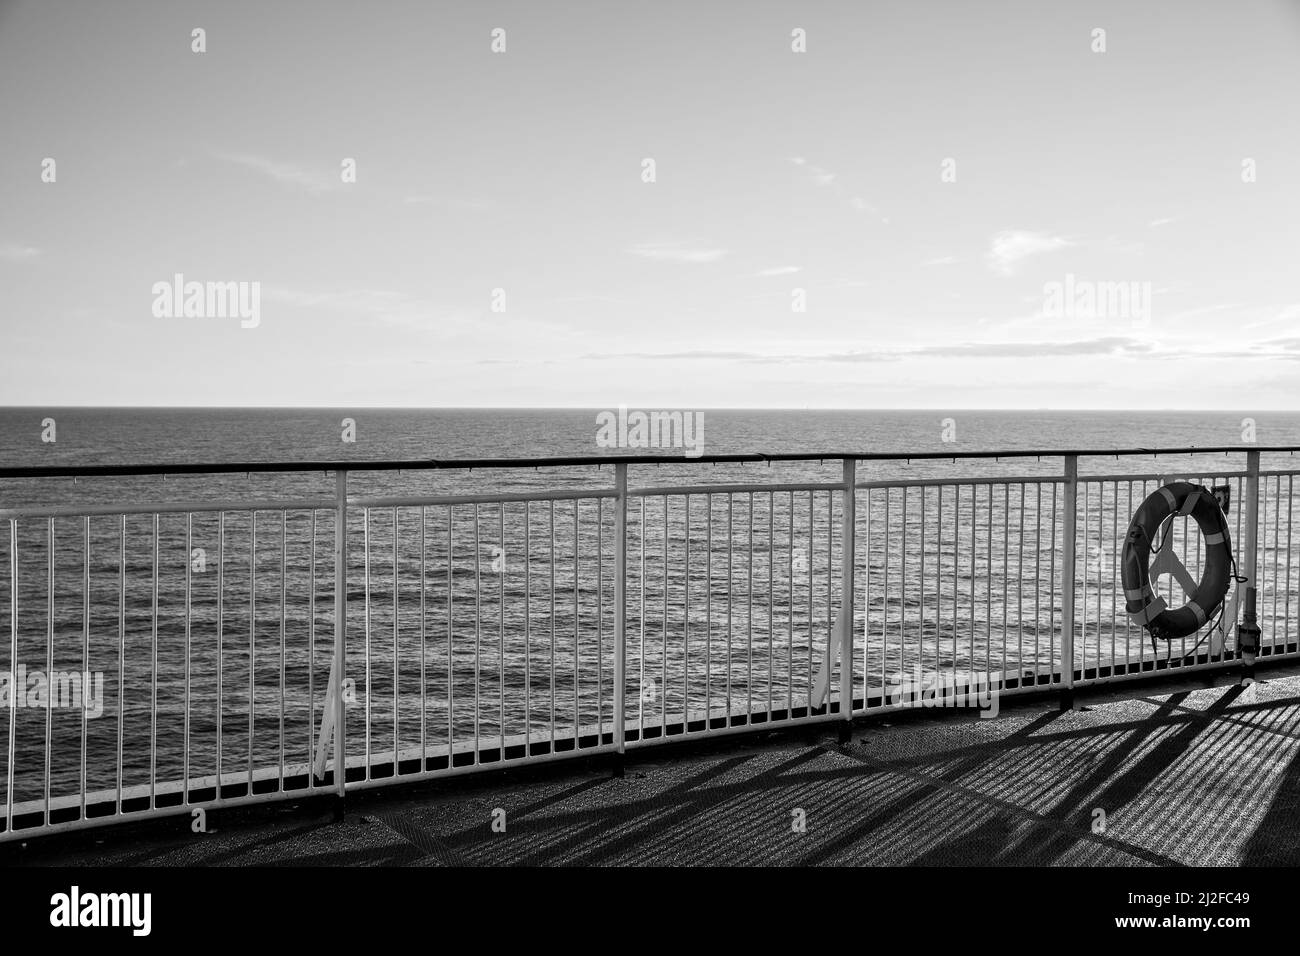 Terrasse ouverte sur un bateau de croisière et horizon marin. Photographie en noir et blanc Banque D'Images